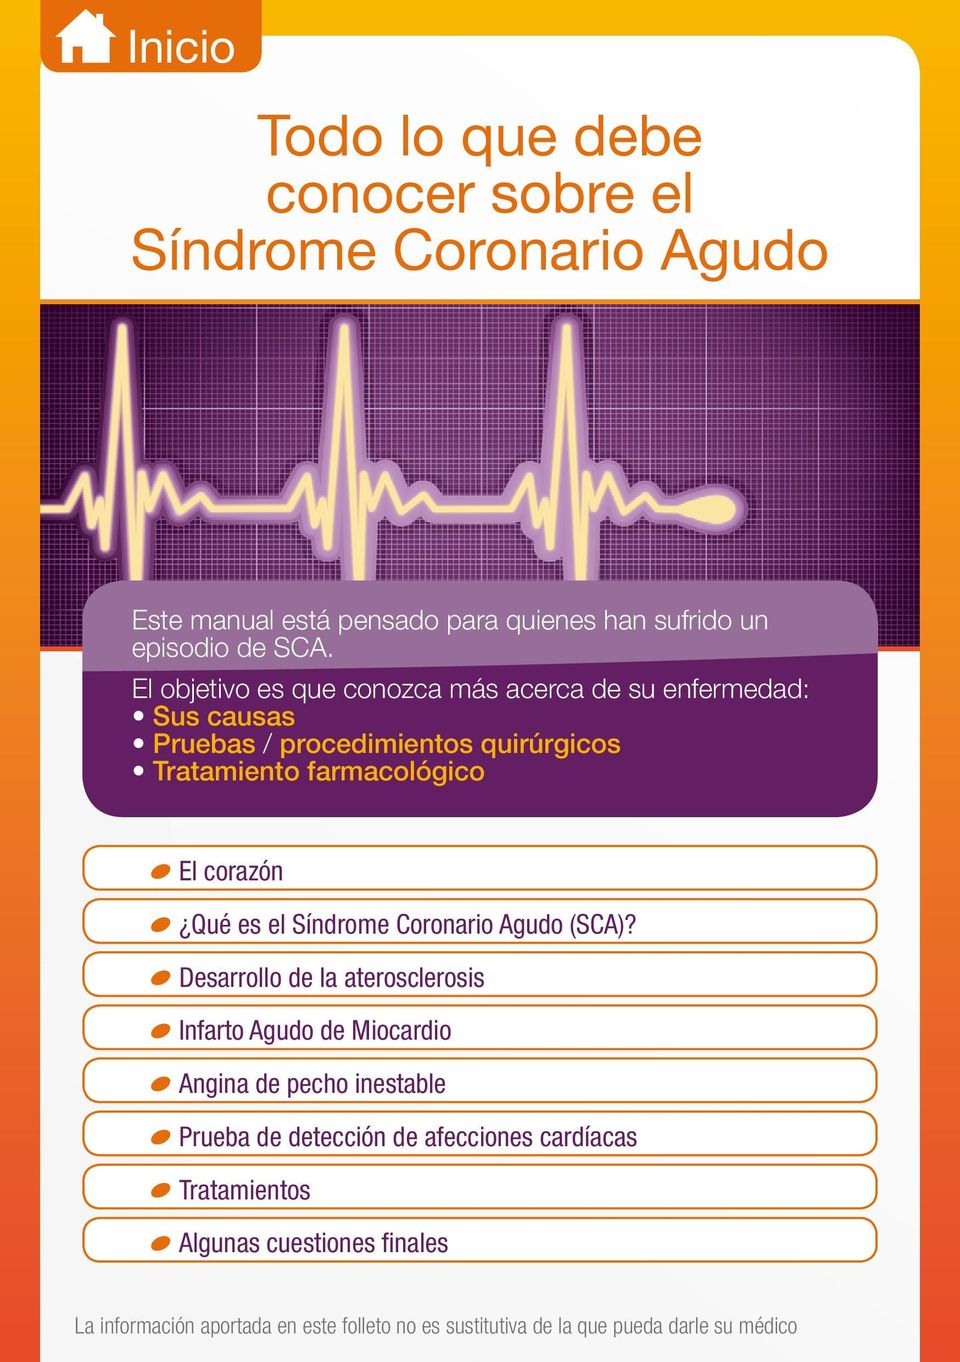 Qué es el Síndrome Coronario Agudo (SCA)?